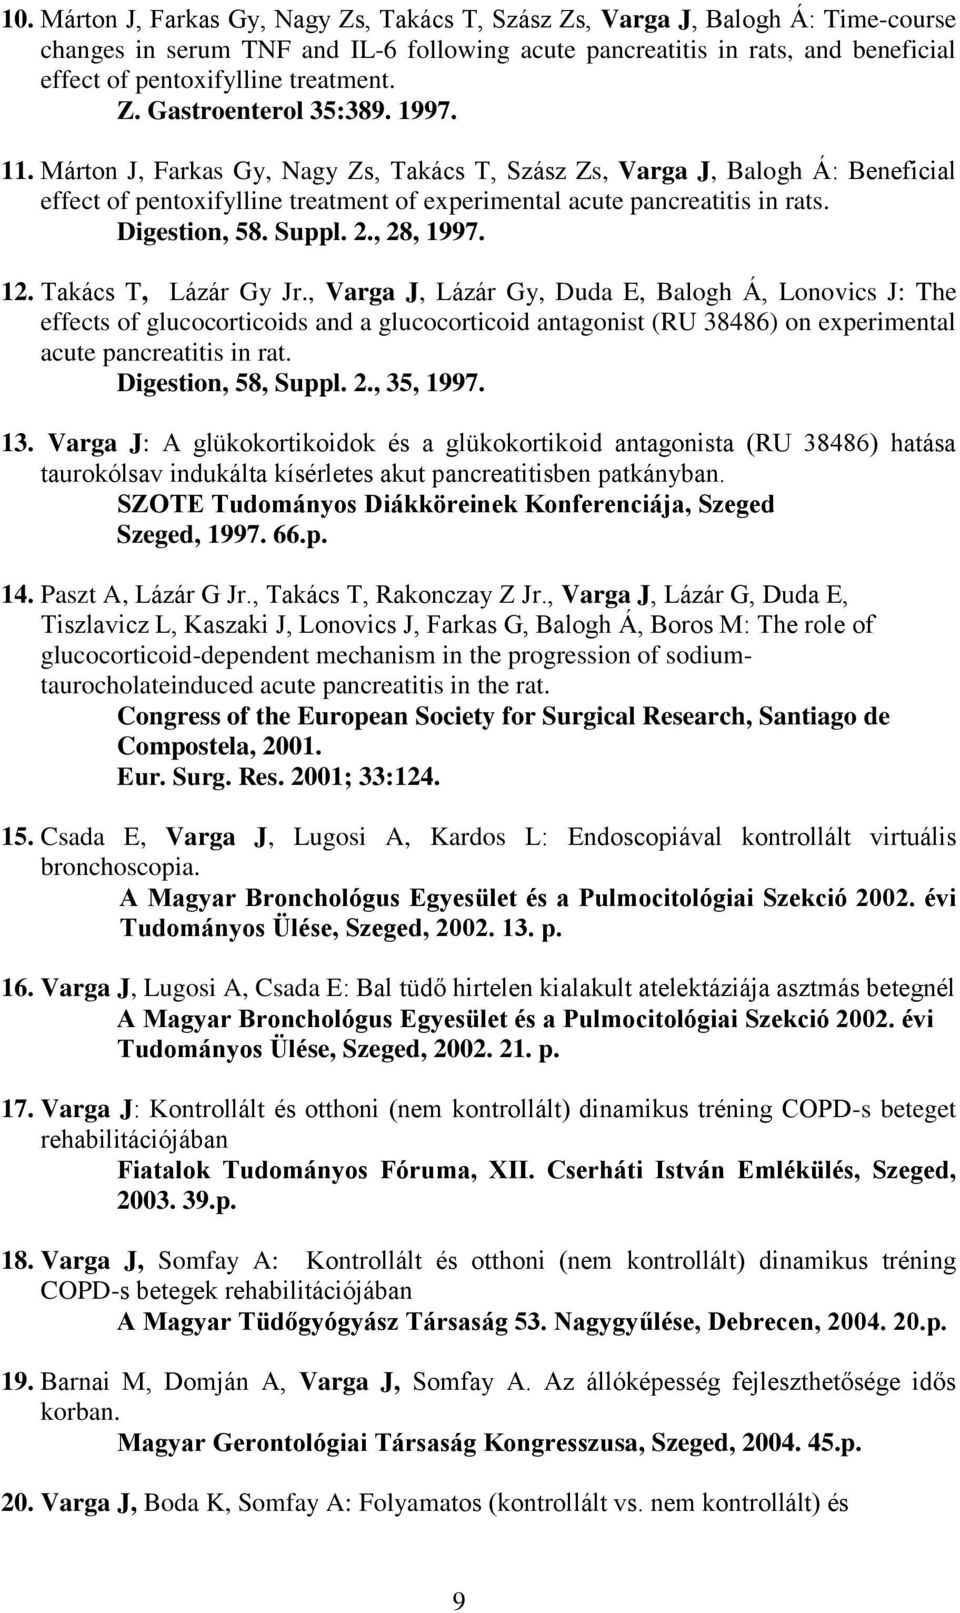 Márton J, Farkas Gy, Nagy Zs, Takács T, Szász Zs, Varga J, Balogh Á: Beneficial effect of pentoxifylline treatment of experimental acute pancreatitis in rats. Digestion, 58. Suppl. 2., 28, 1997. 12.